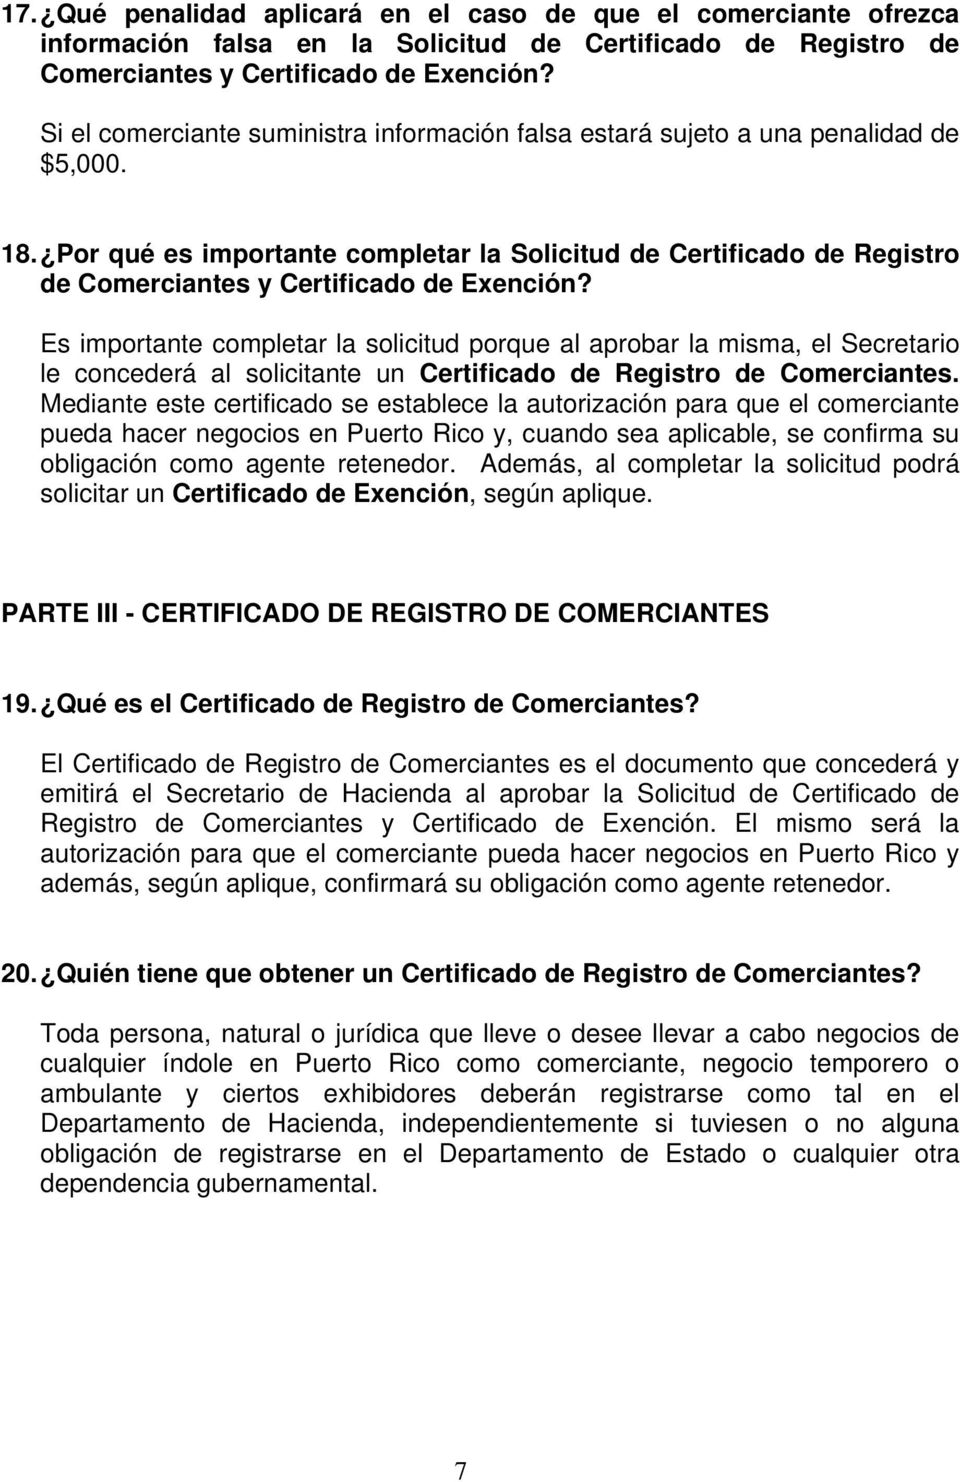 Por qué es importante completar la Solicitud de Certificado de Registro de Comerciantes y Certificado de Exención?